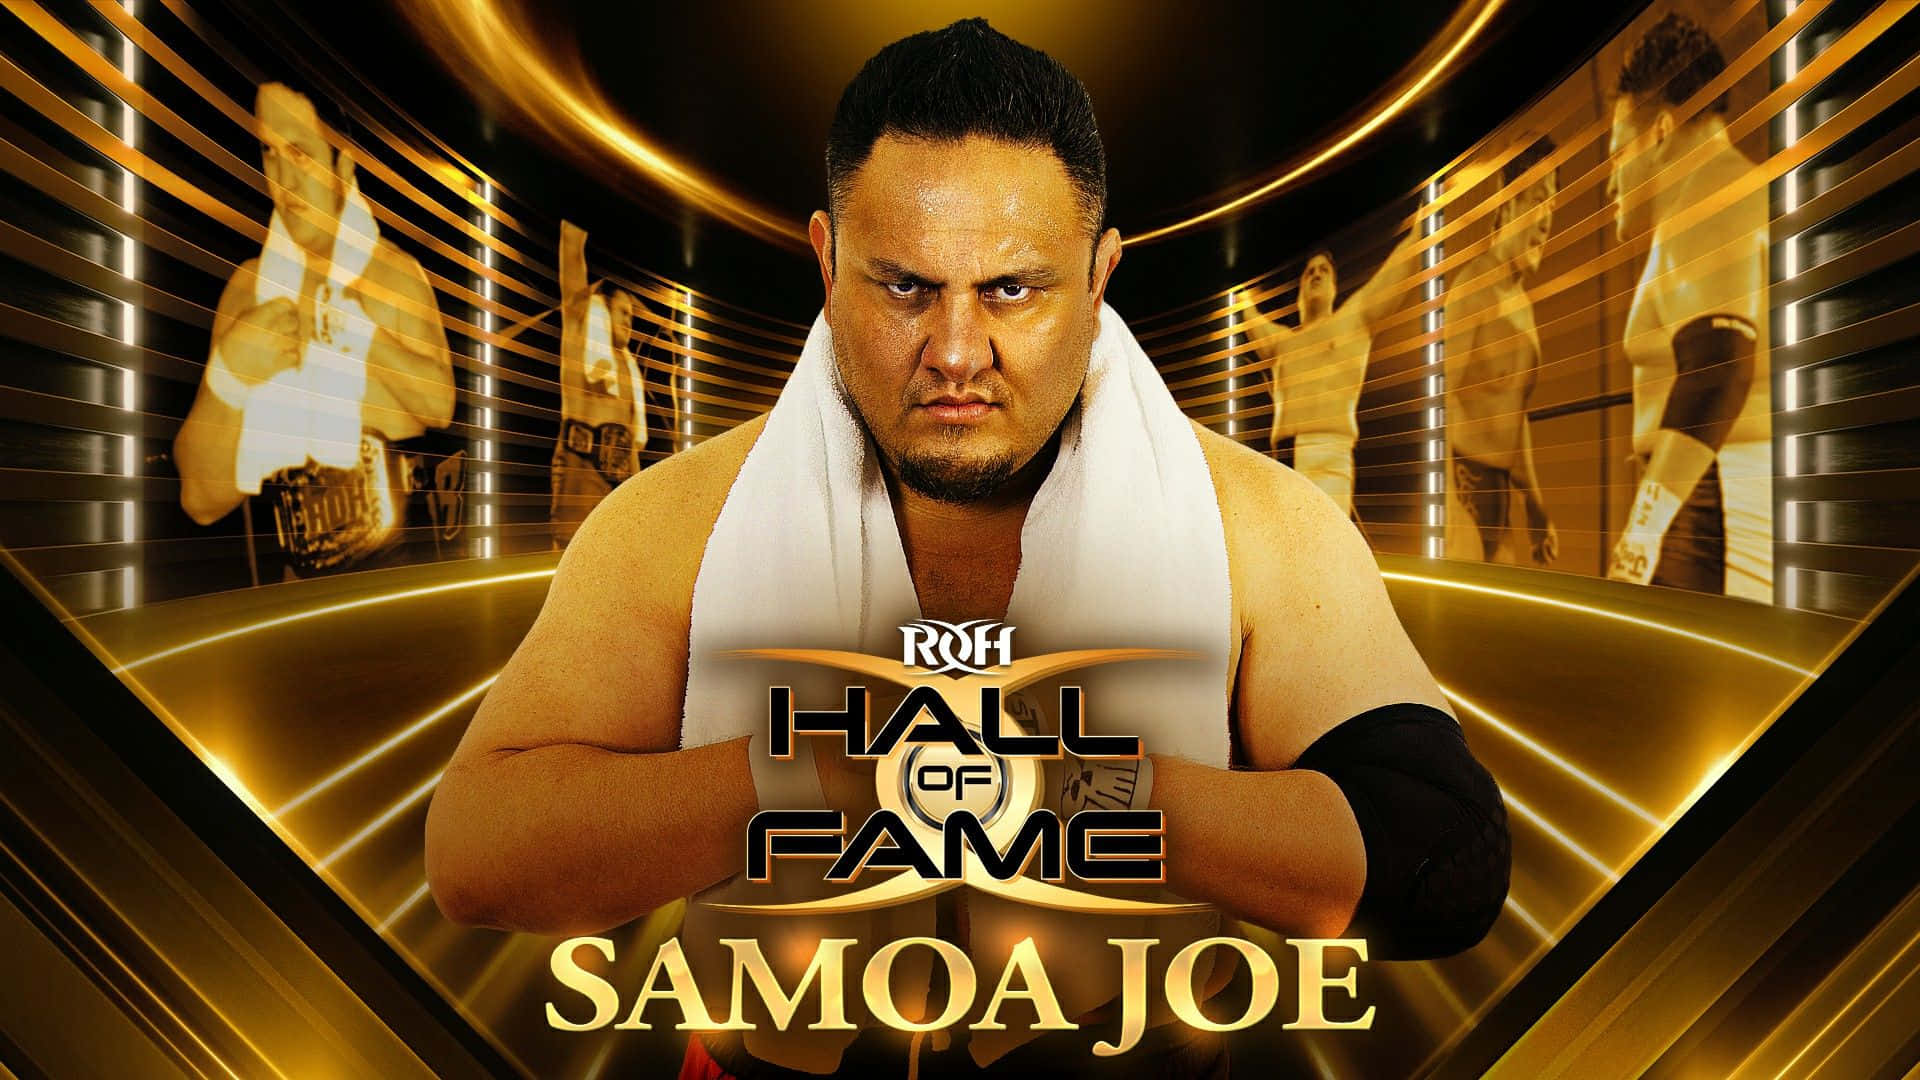 Samoajoe Ring Of Honor Hall Of Fame: Samoa Joe Ring Of Honor Hall Of Fame Wallpaper